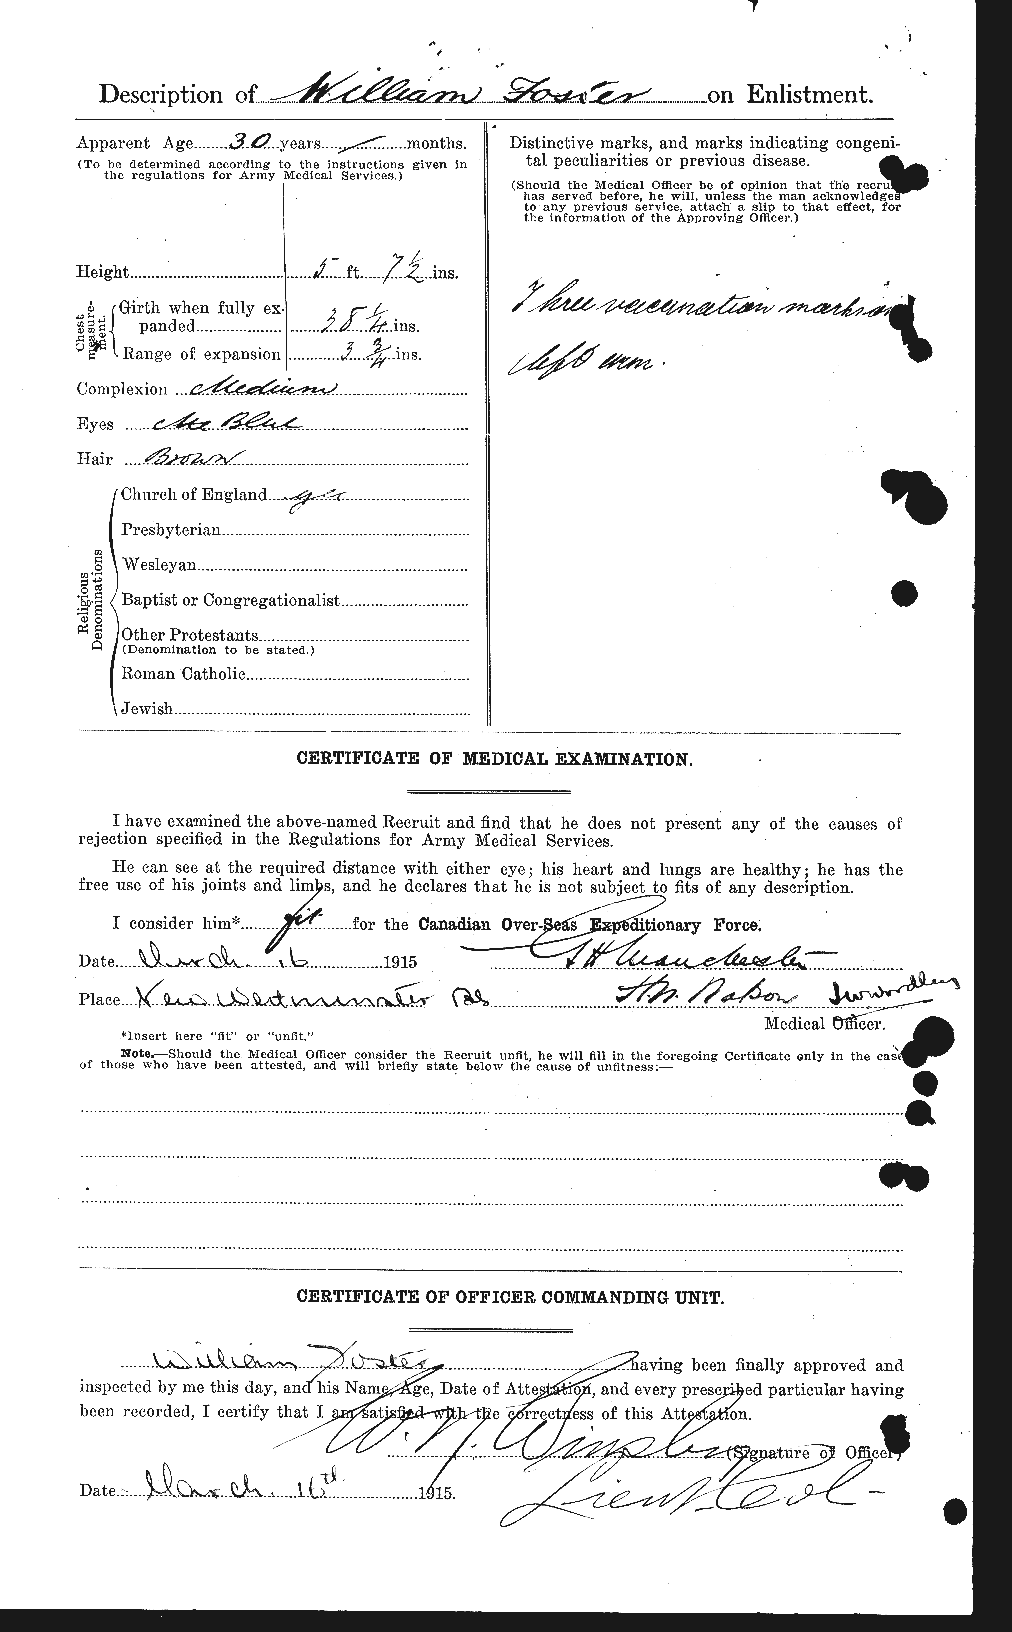 Dossiers du Personnel de la Première Guerre mondiale - CEC 328716b